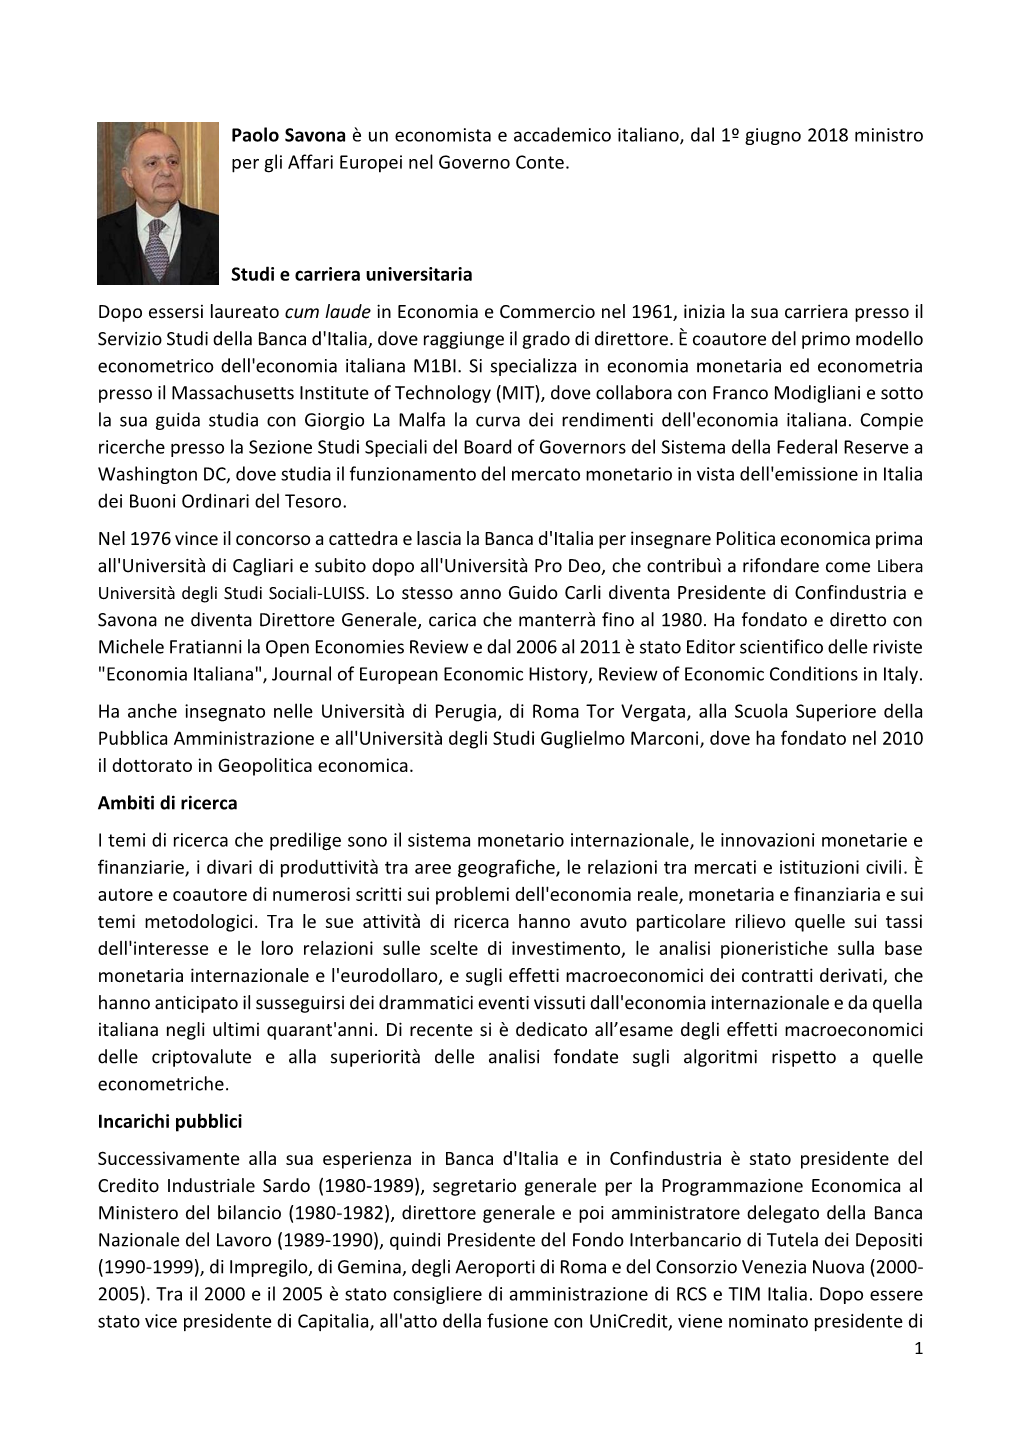 Paolo Savona È Un Economista E Accademico Italiano, Dal 1º Giugno 2018 Ministro Per Gli Affari Europei Nel Governo Conte